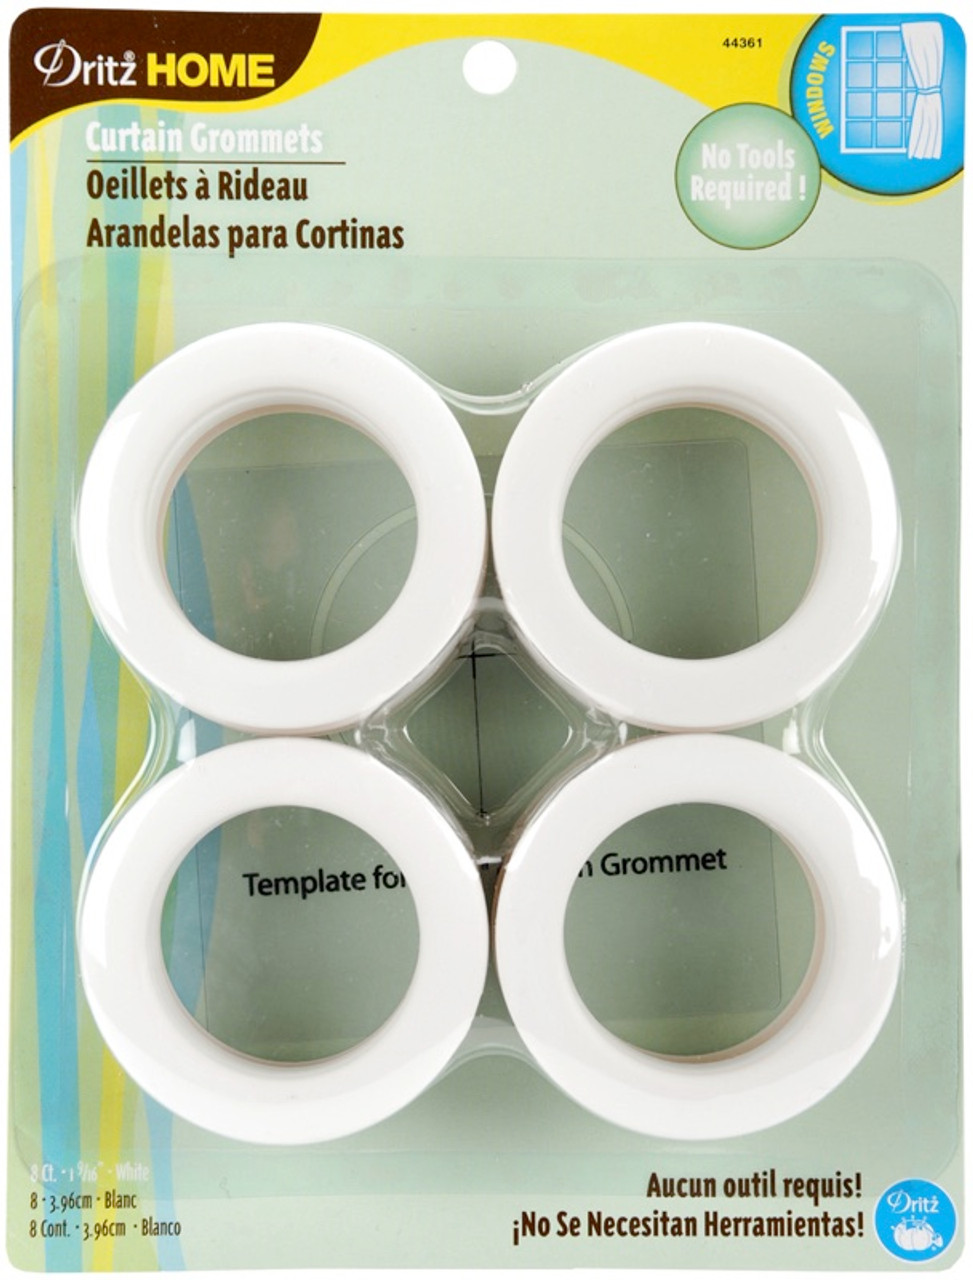 Buy the Dritz Curtain Grommets 1-9/16 Inner Diameter Plastic 8